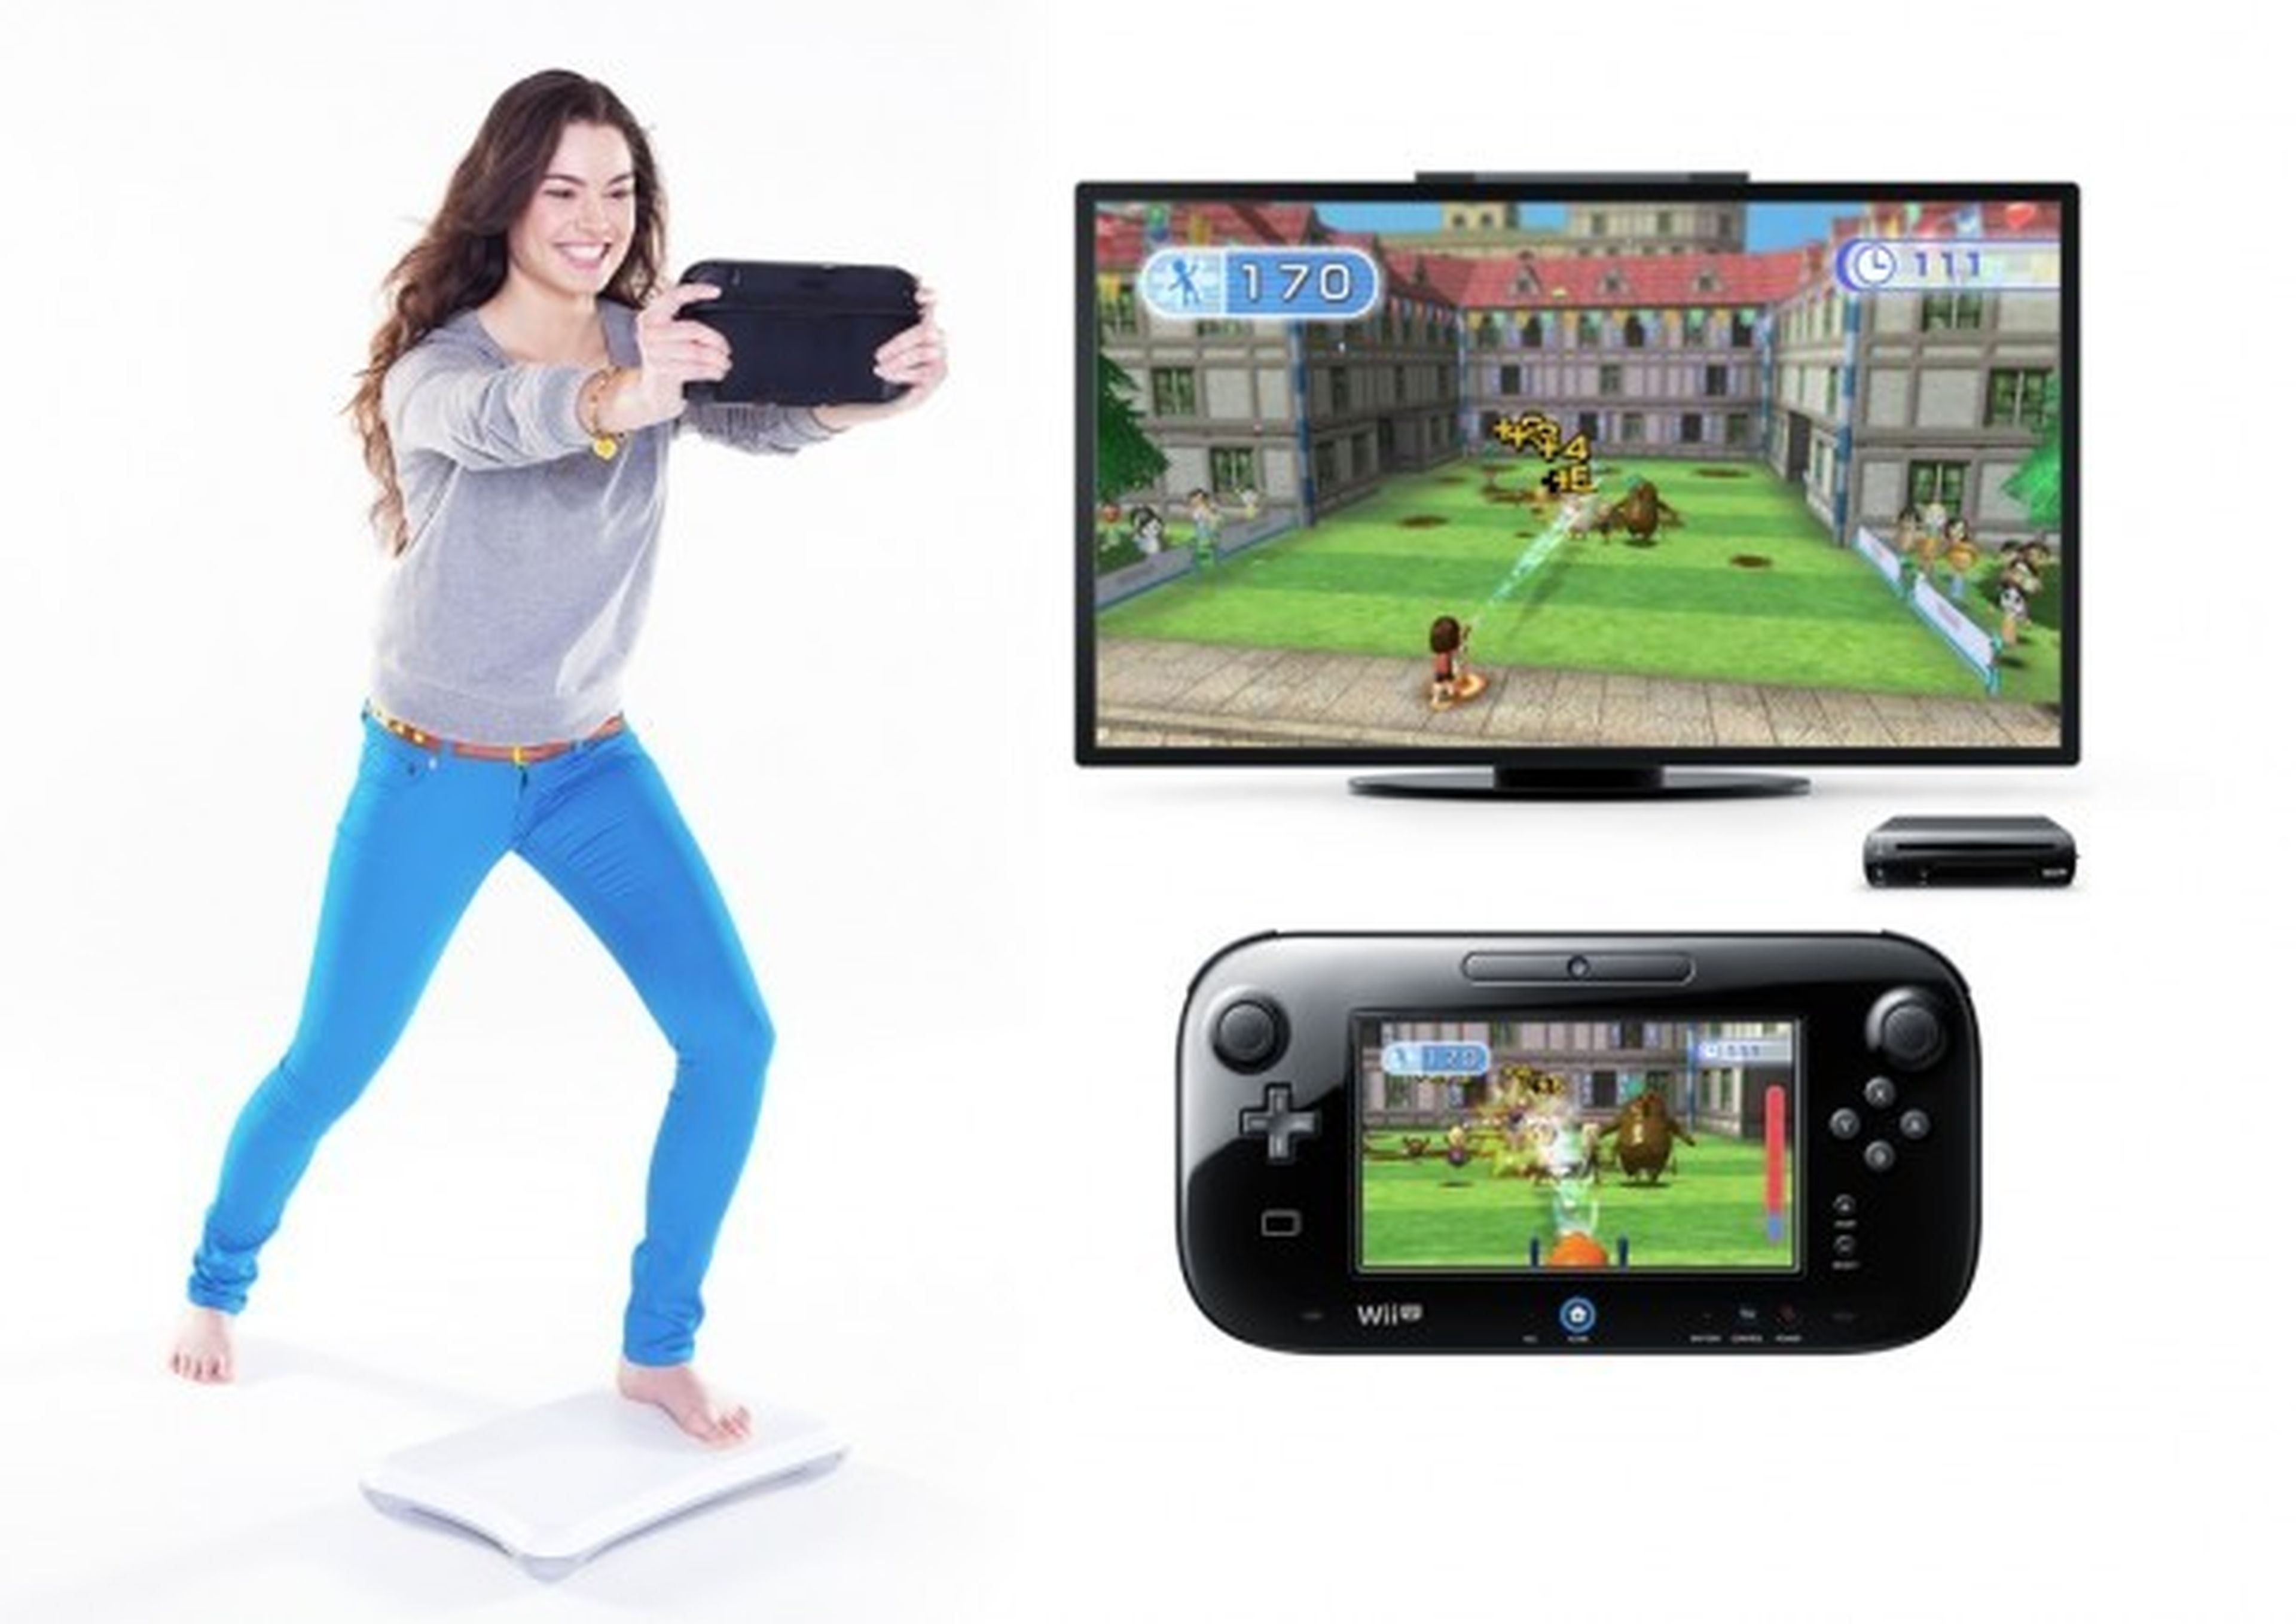 Wii Fit U retrasa su lanzamiento hasta el 13 de diciembre